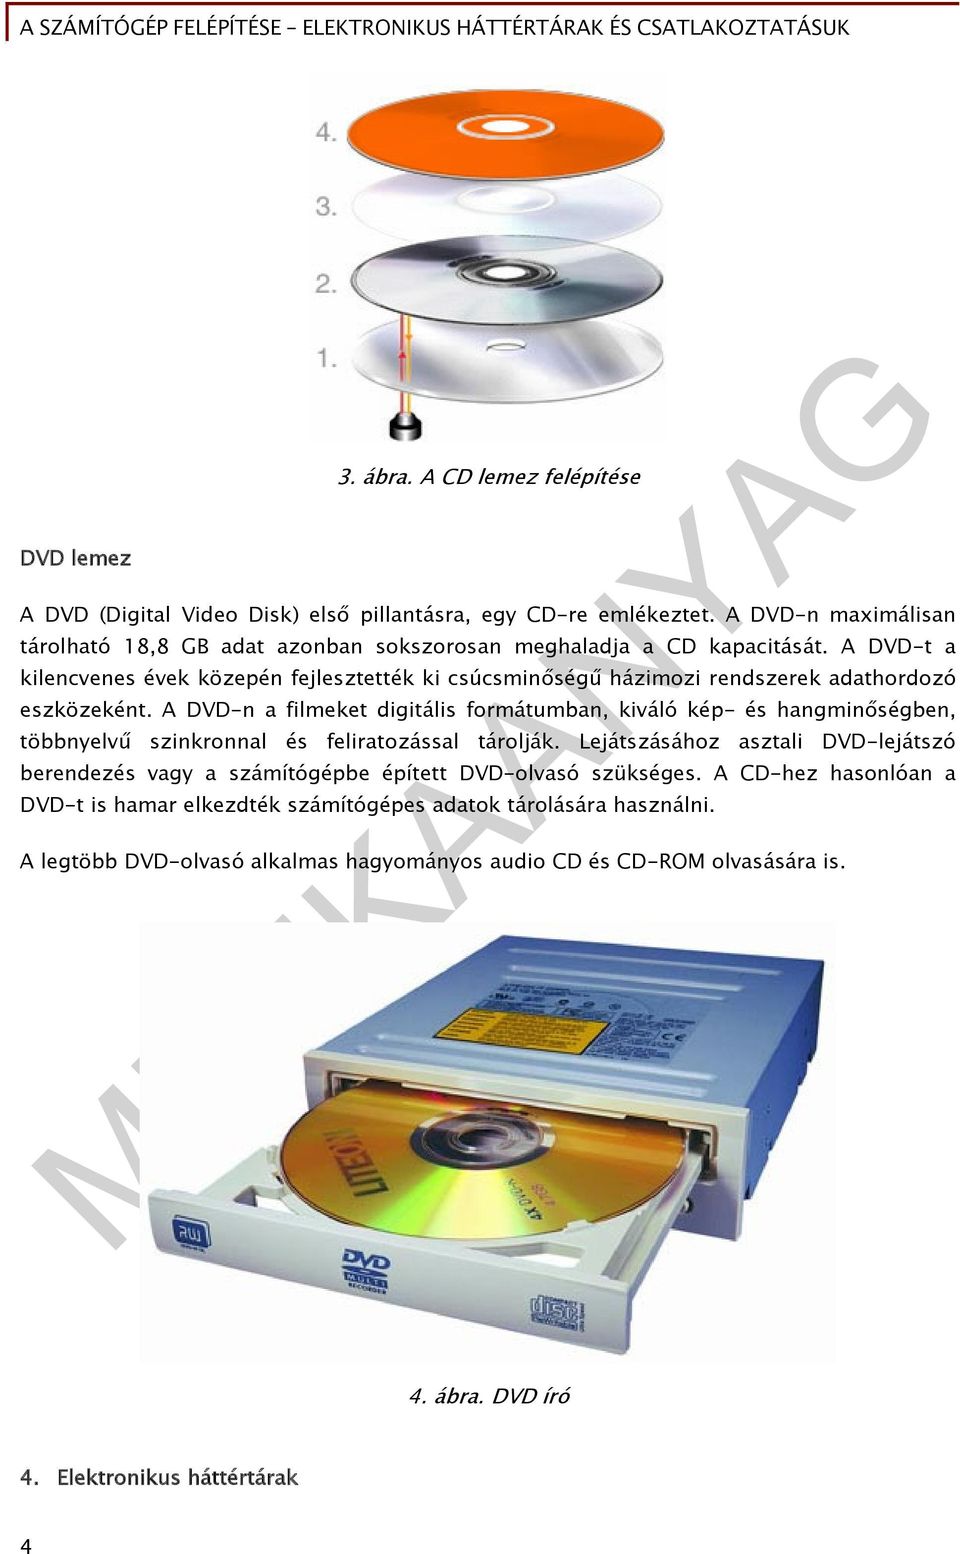 A DVD-t a kilencvenes évek közepén fejlesztették ki csúcsminőségű házimozi rendszerek adathordozó eszközeként.